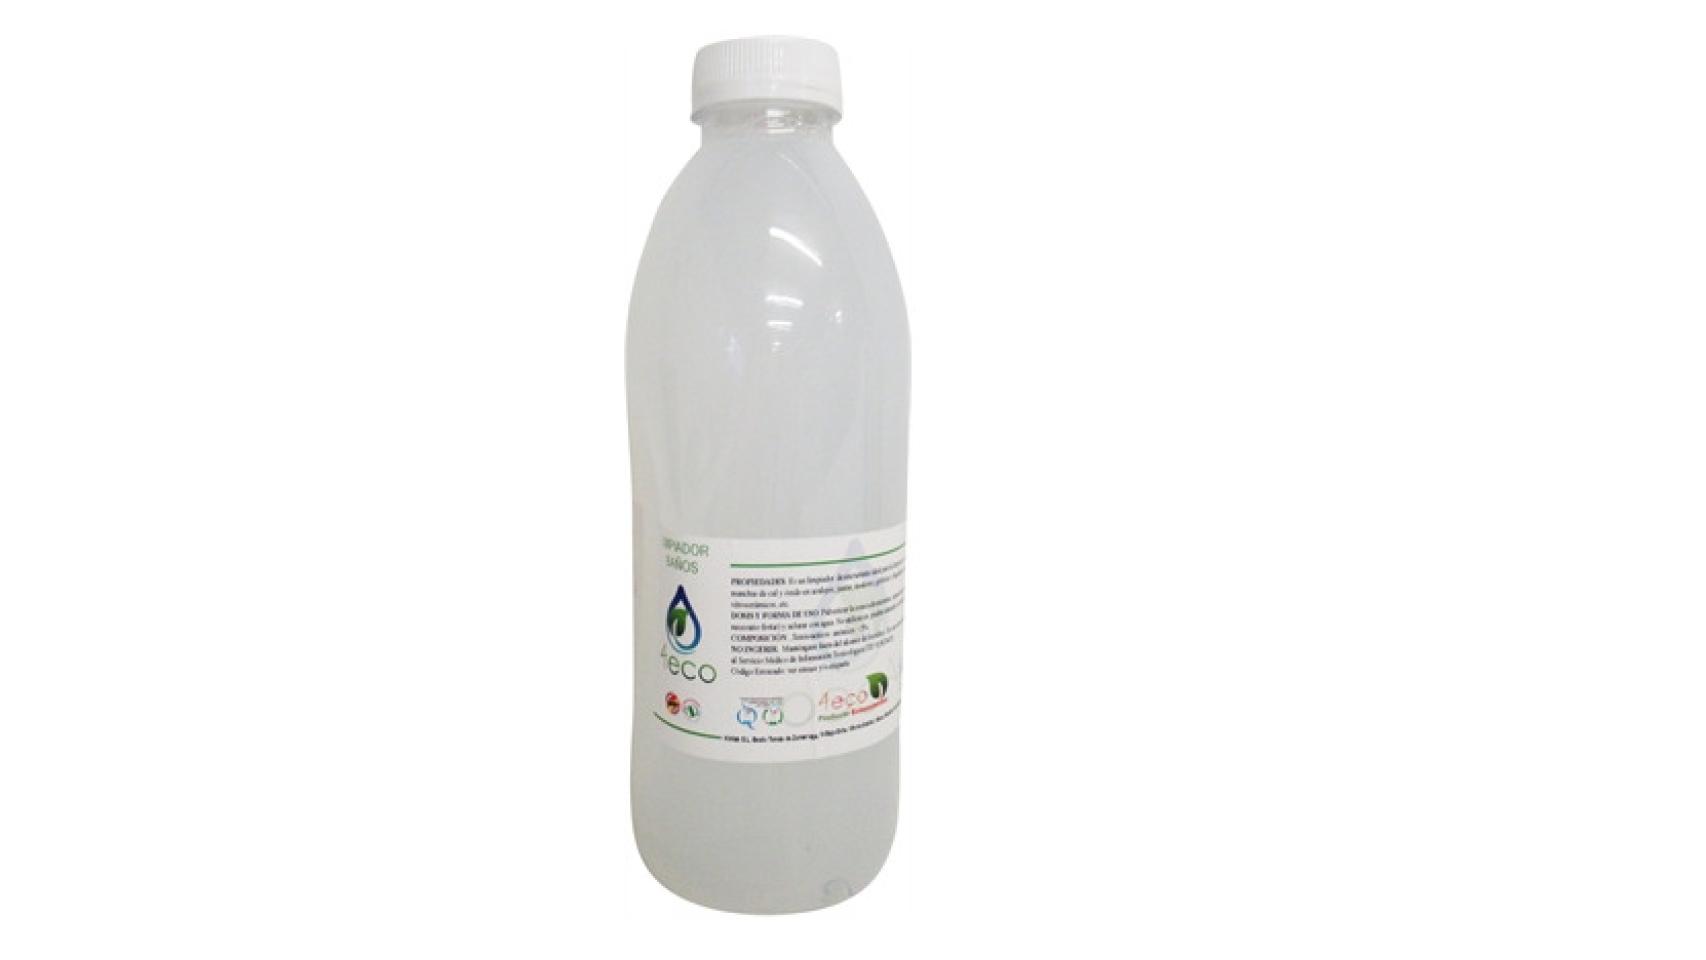 Detergente en Polvo – 4eco Bilbao – detergentes a granel, productos de  limpieza y productos alternativos de uso cotidiano ecológicos.